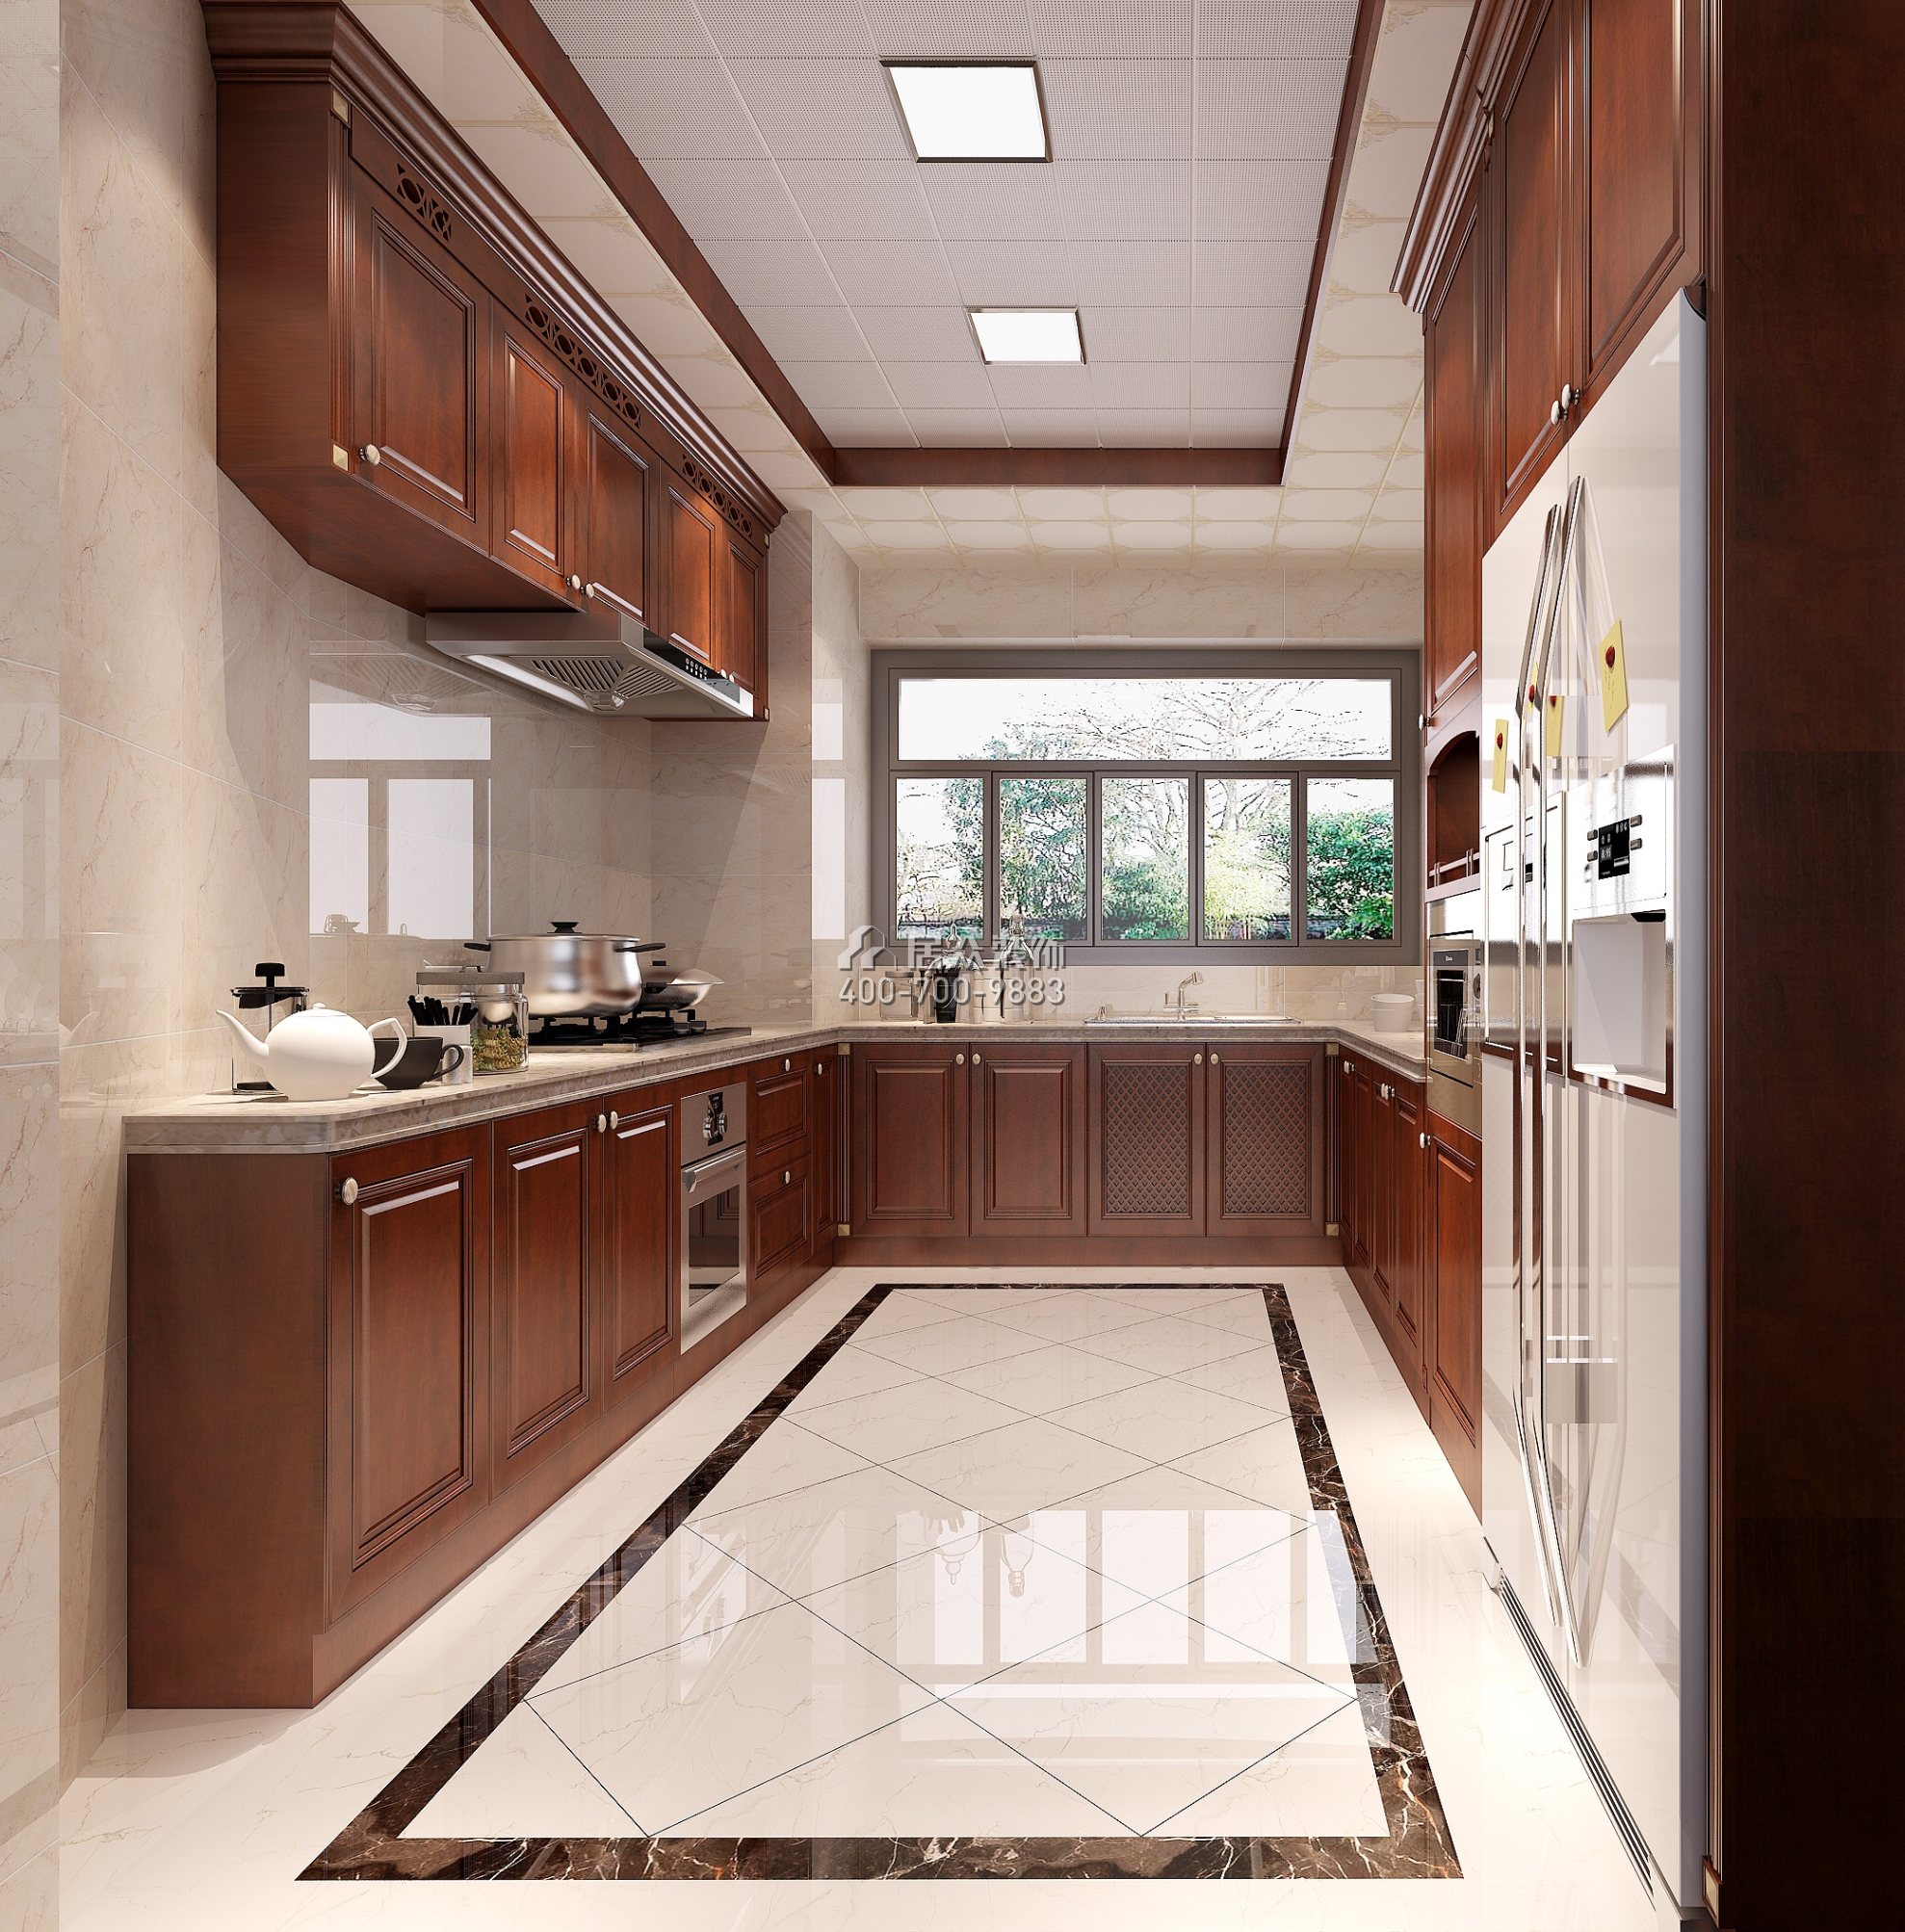 星河丹堤180平方米欧式风格平层户型厨房开元官网效果图